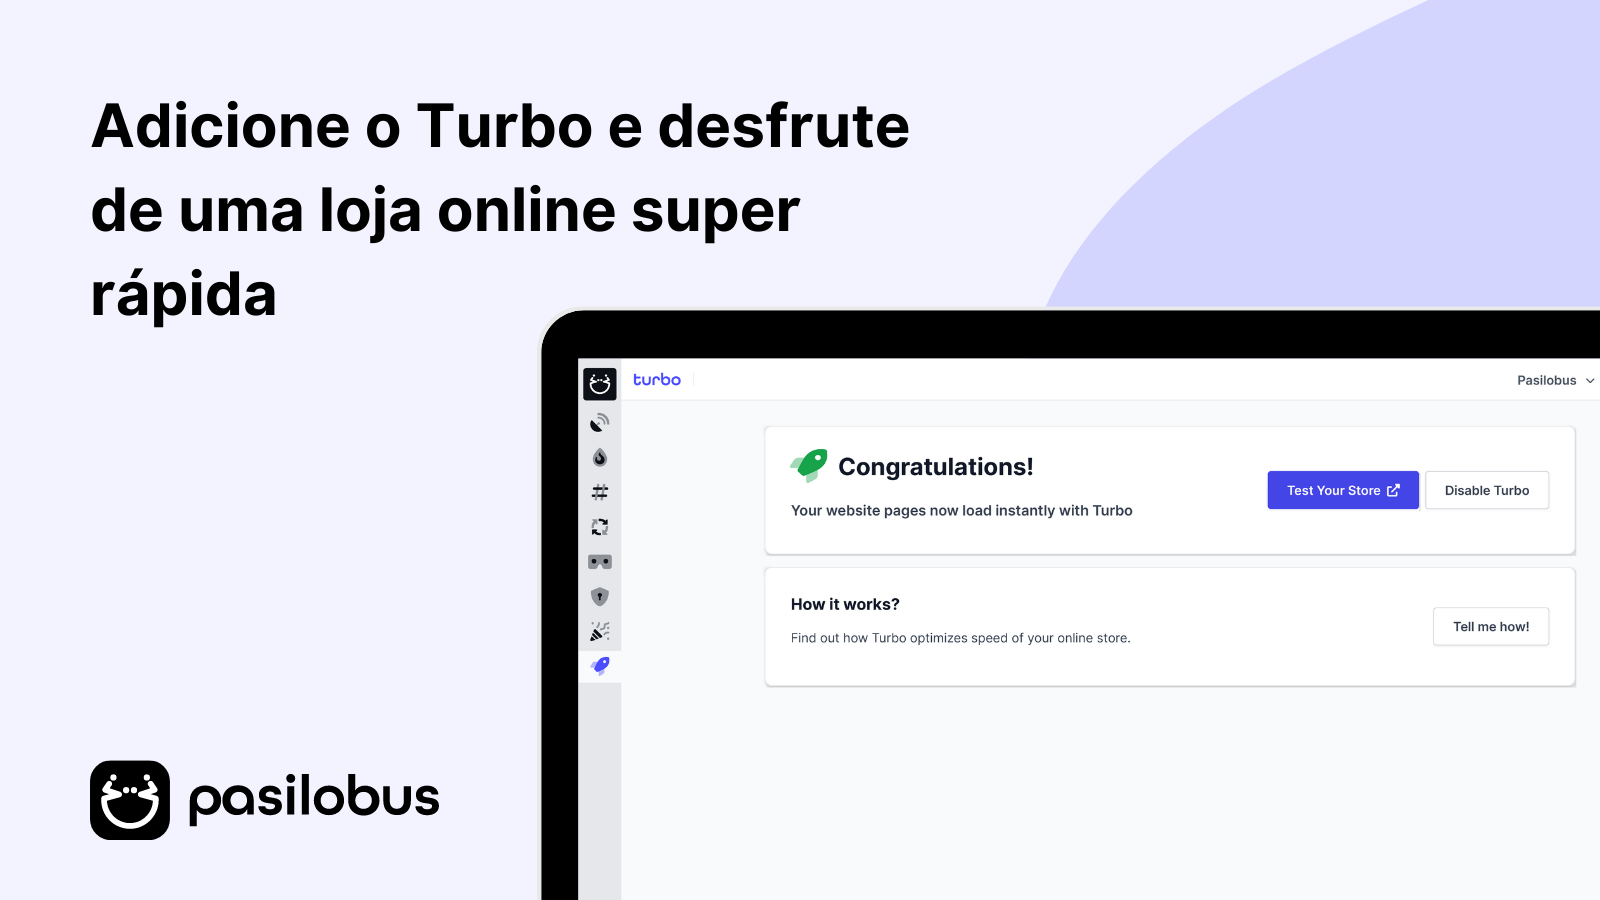 Adicione o Turbo e desfrute de uma loja online super rápida